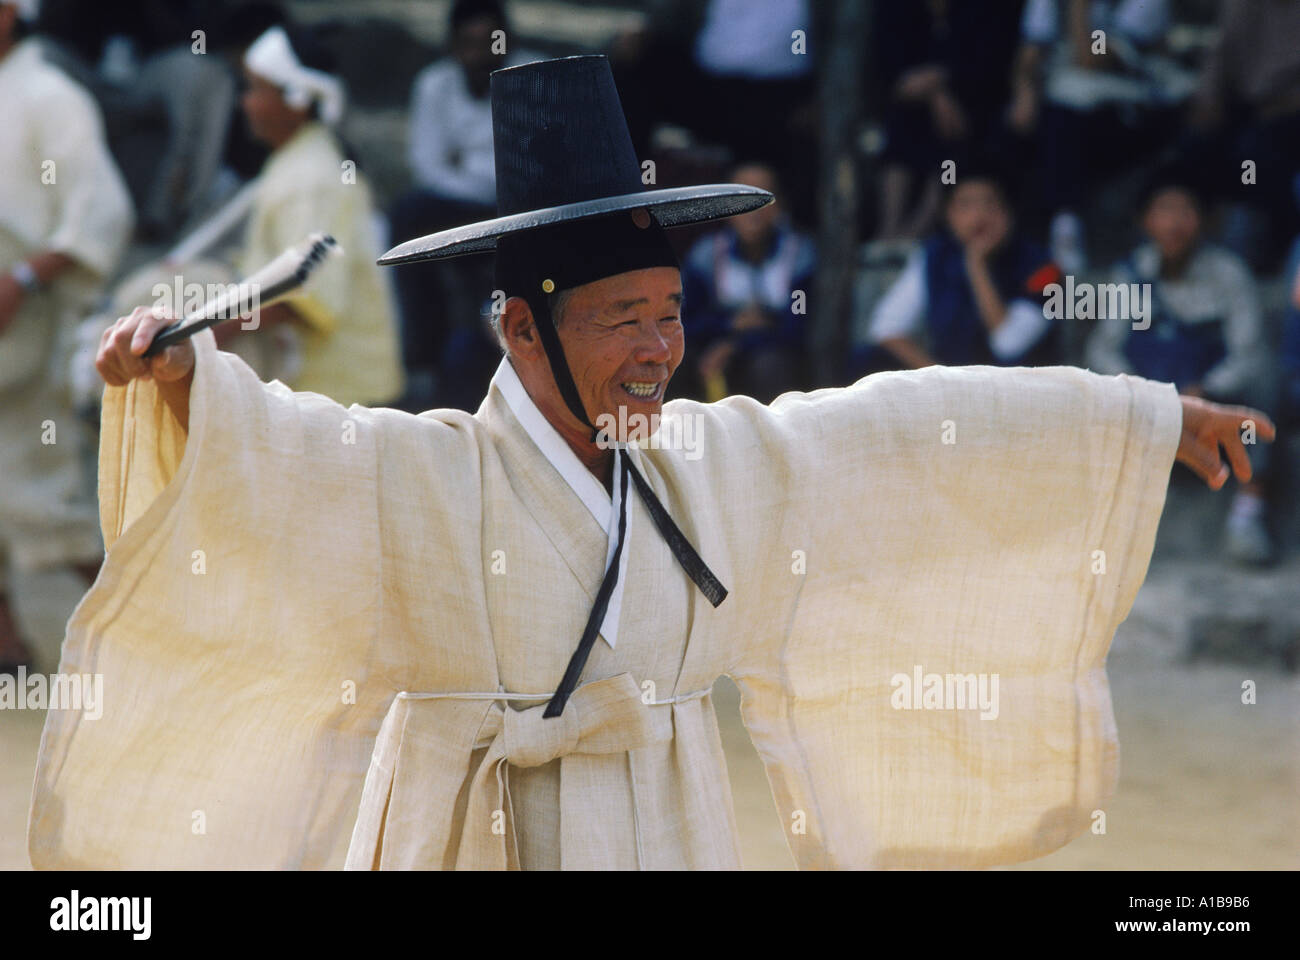 Porträt eines Mannes in Tracht und hohen Hut während des Tanzes Bauern auf Wando Insel South Korea Asien A Evrard Stockfoto